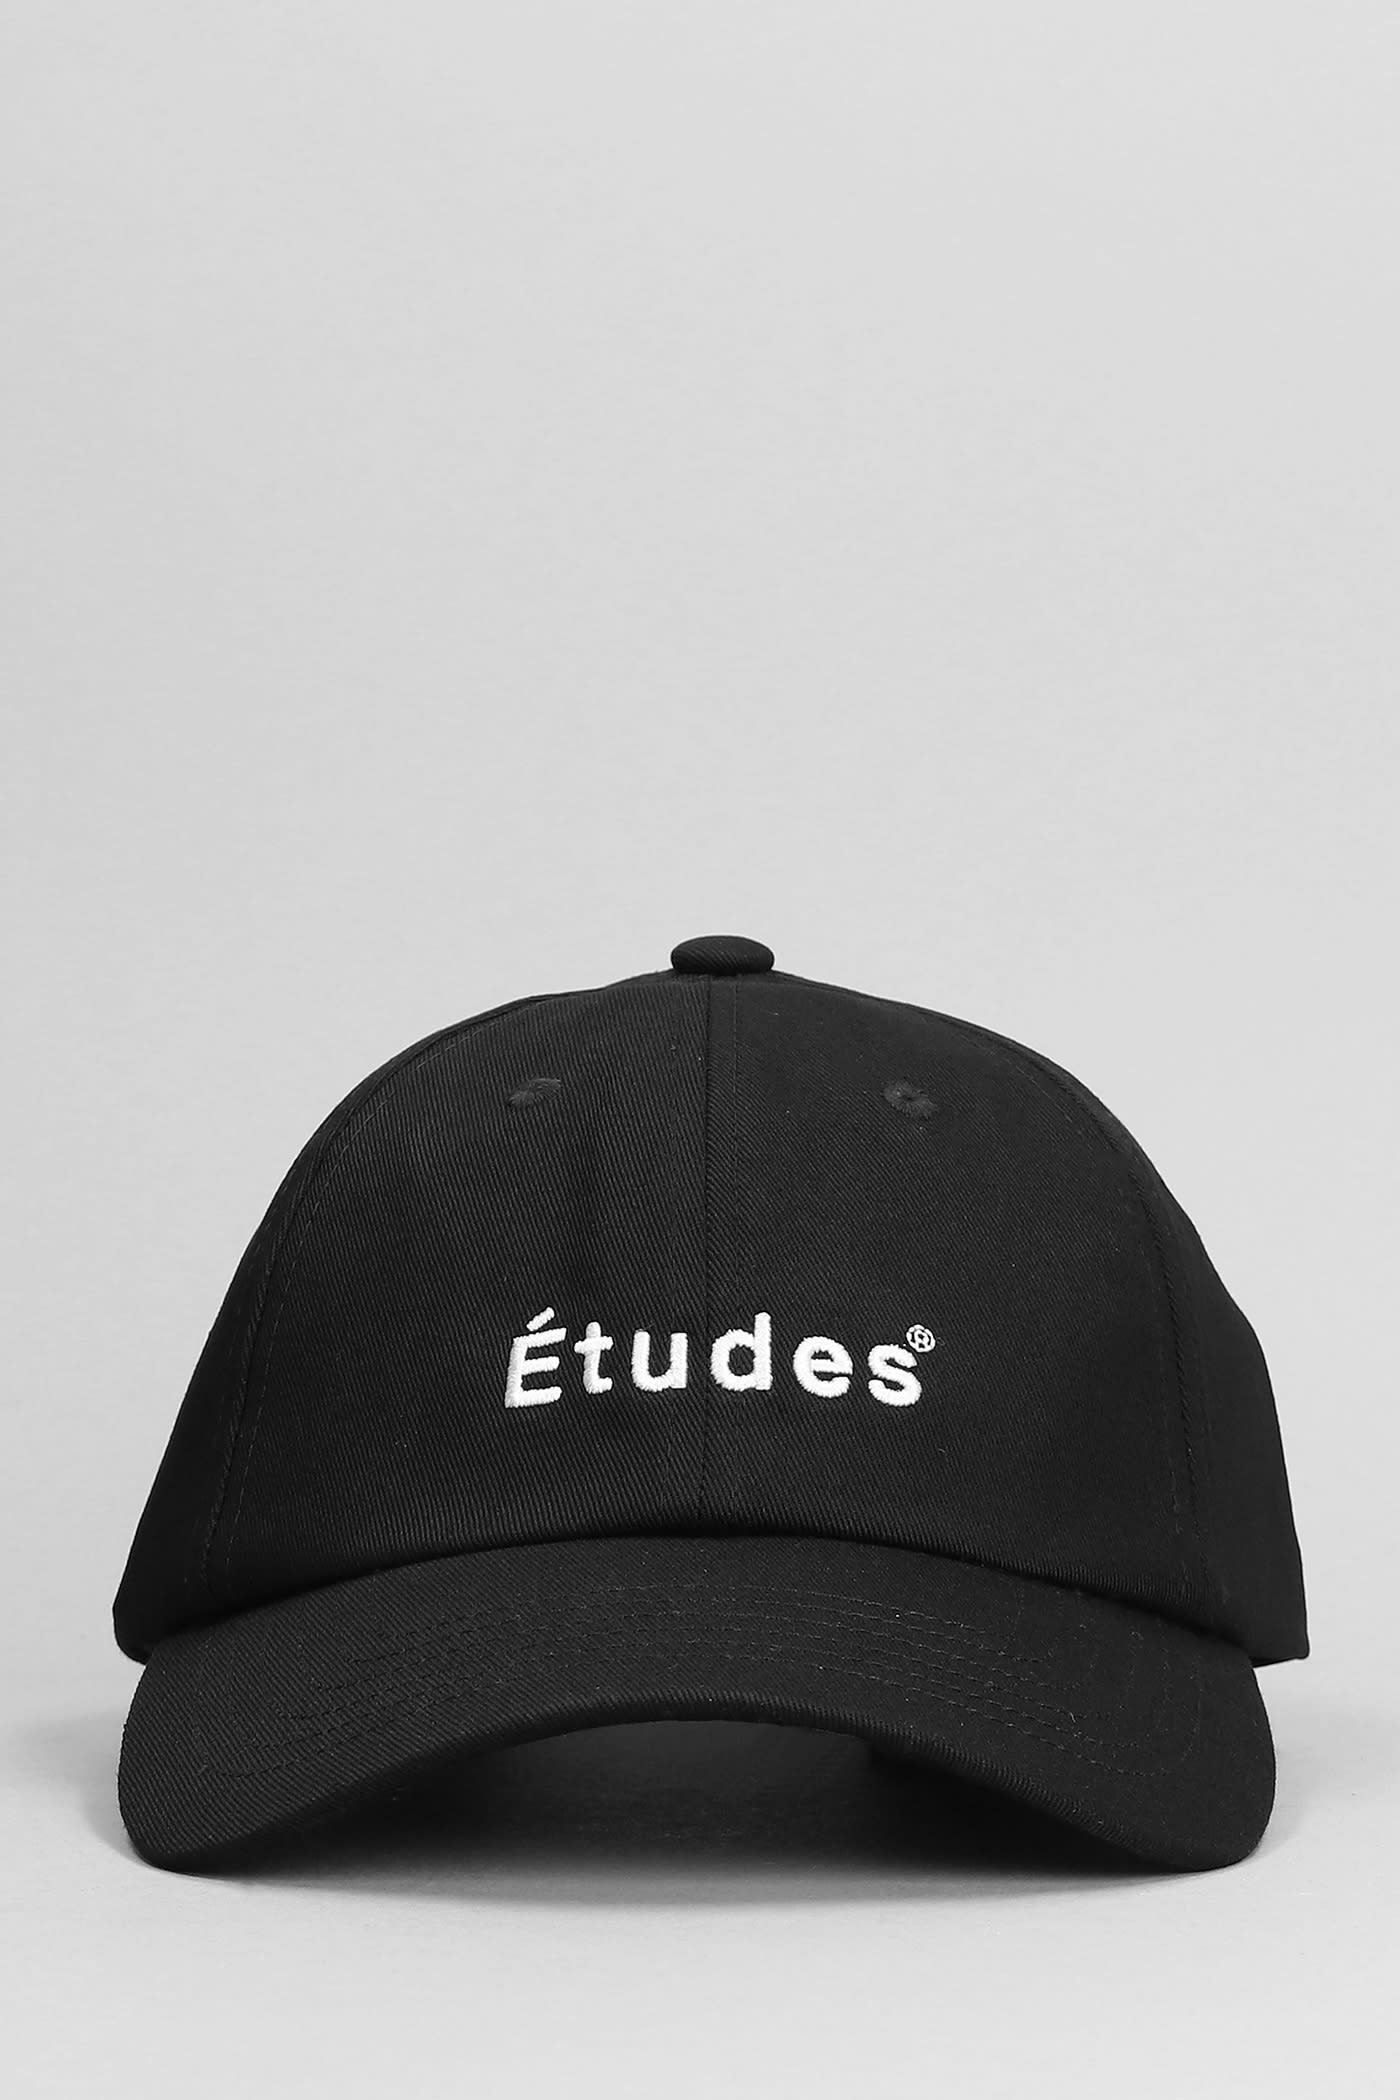 Études Hats In Black Cotton